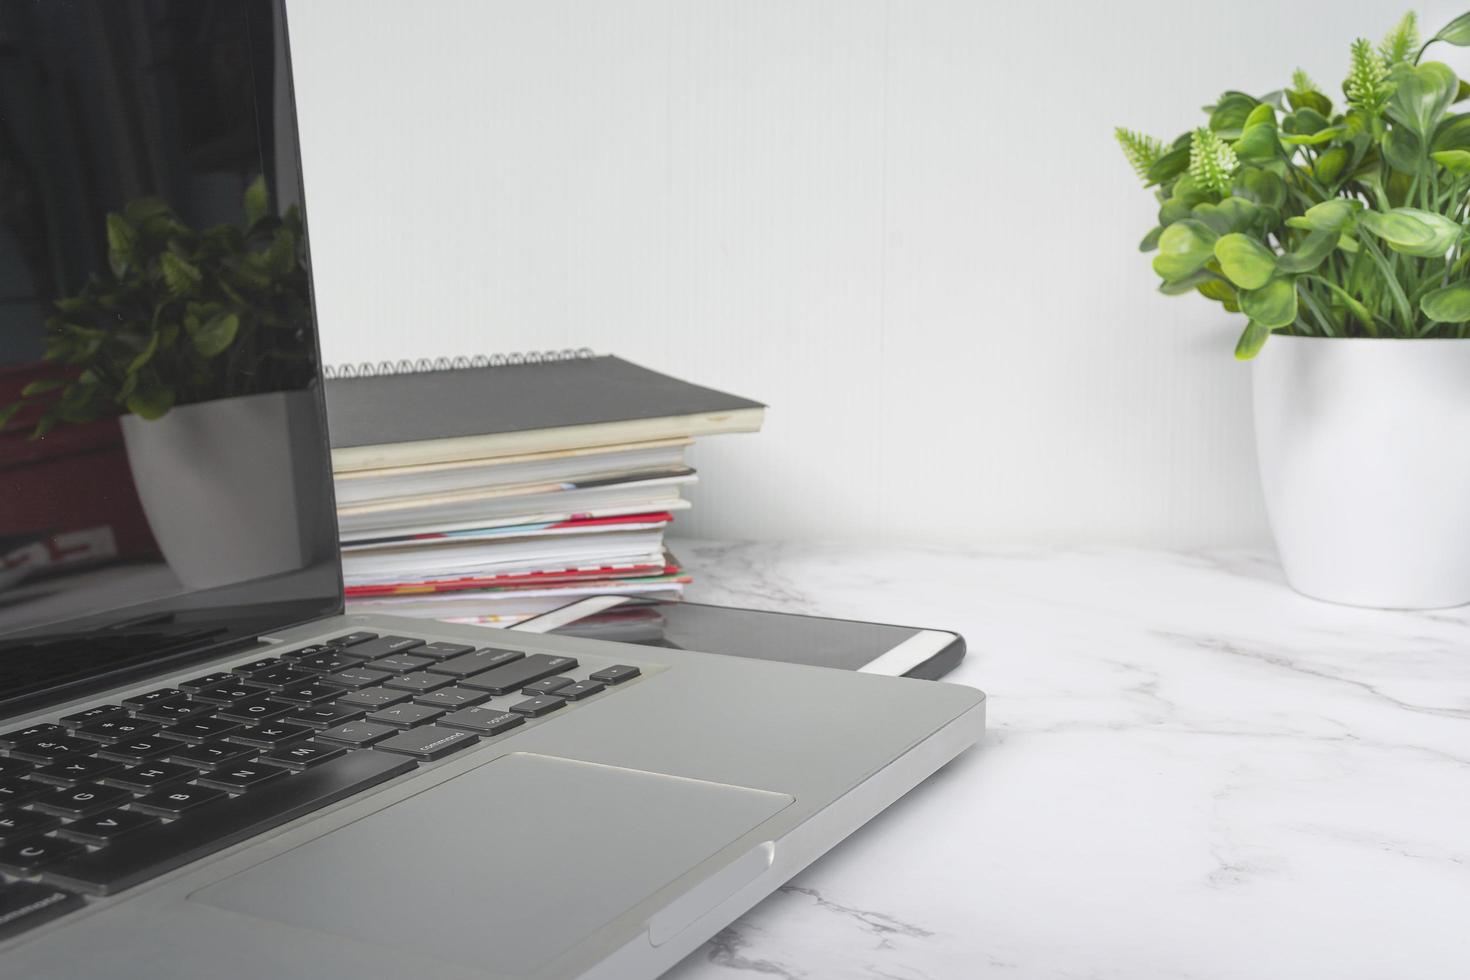 portátil en mesa blanca con planta en maceta, portátiles y smartphone. foto